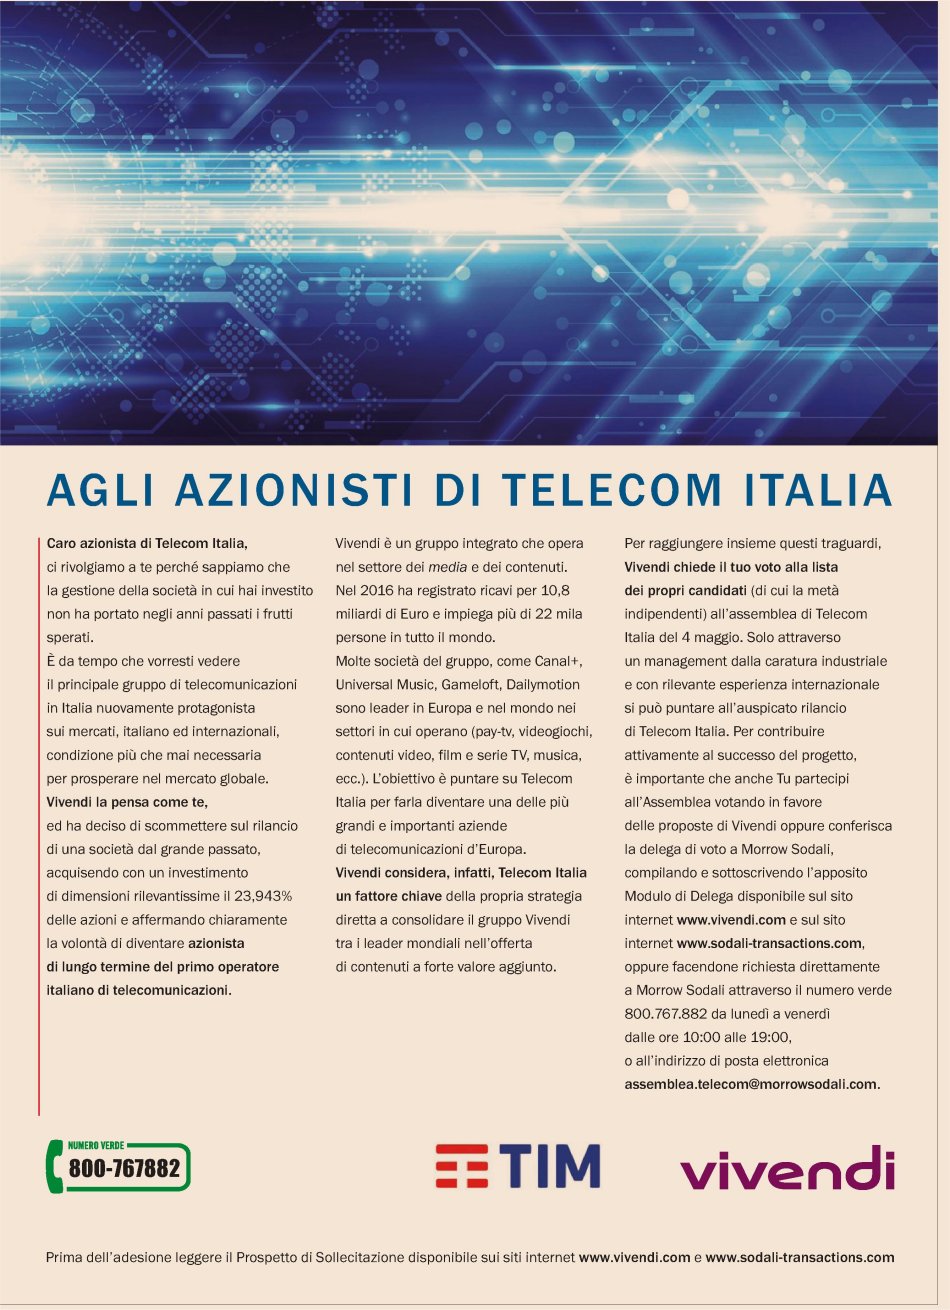  Vivendi chiama al voto piccoli azionisti insoddisfatti Telecom Italia  